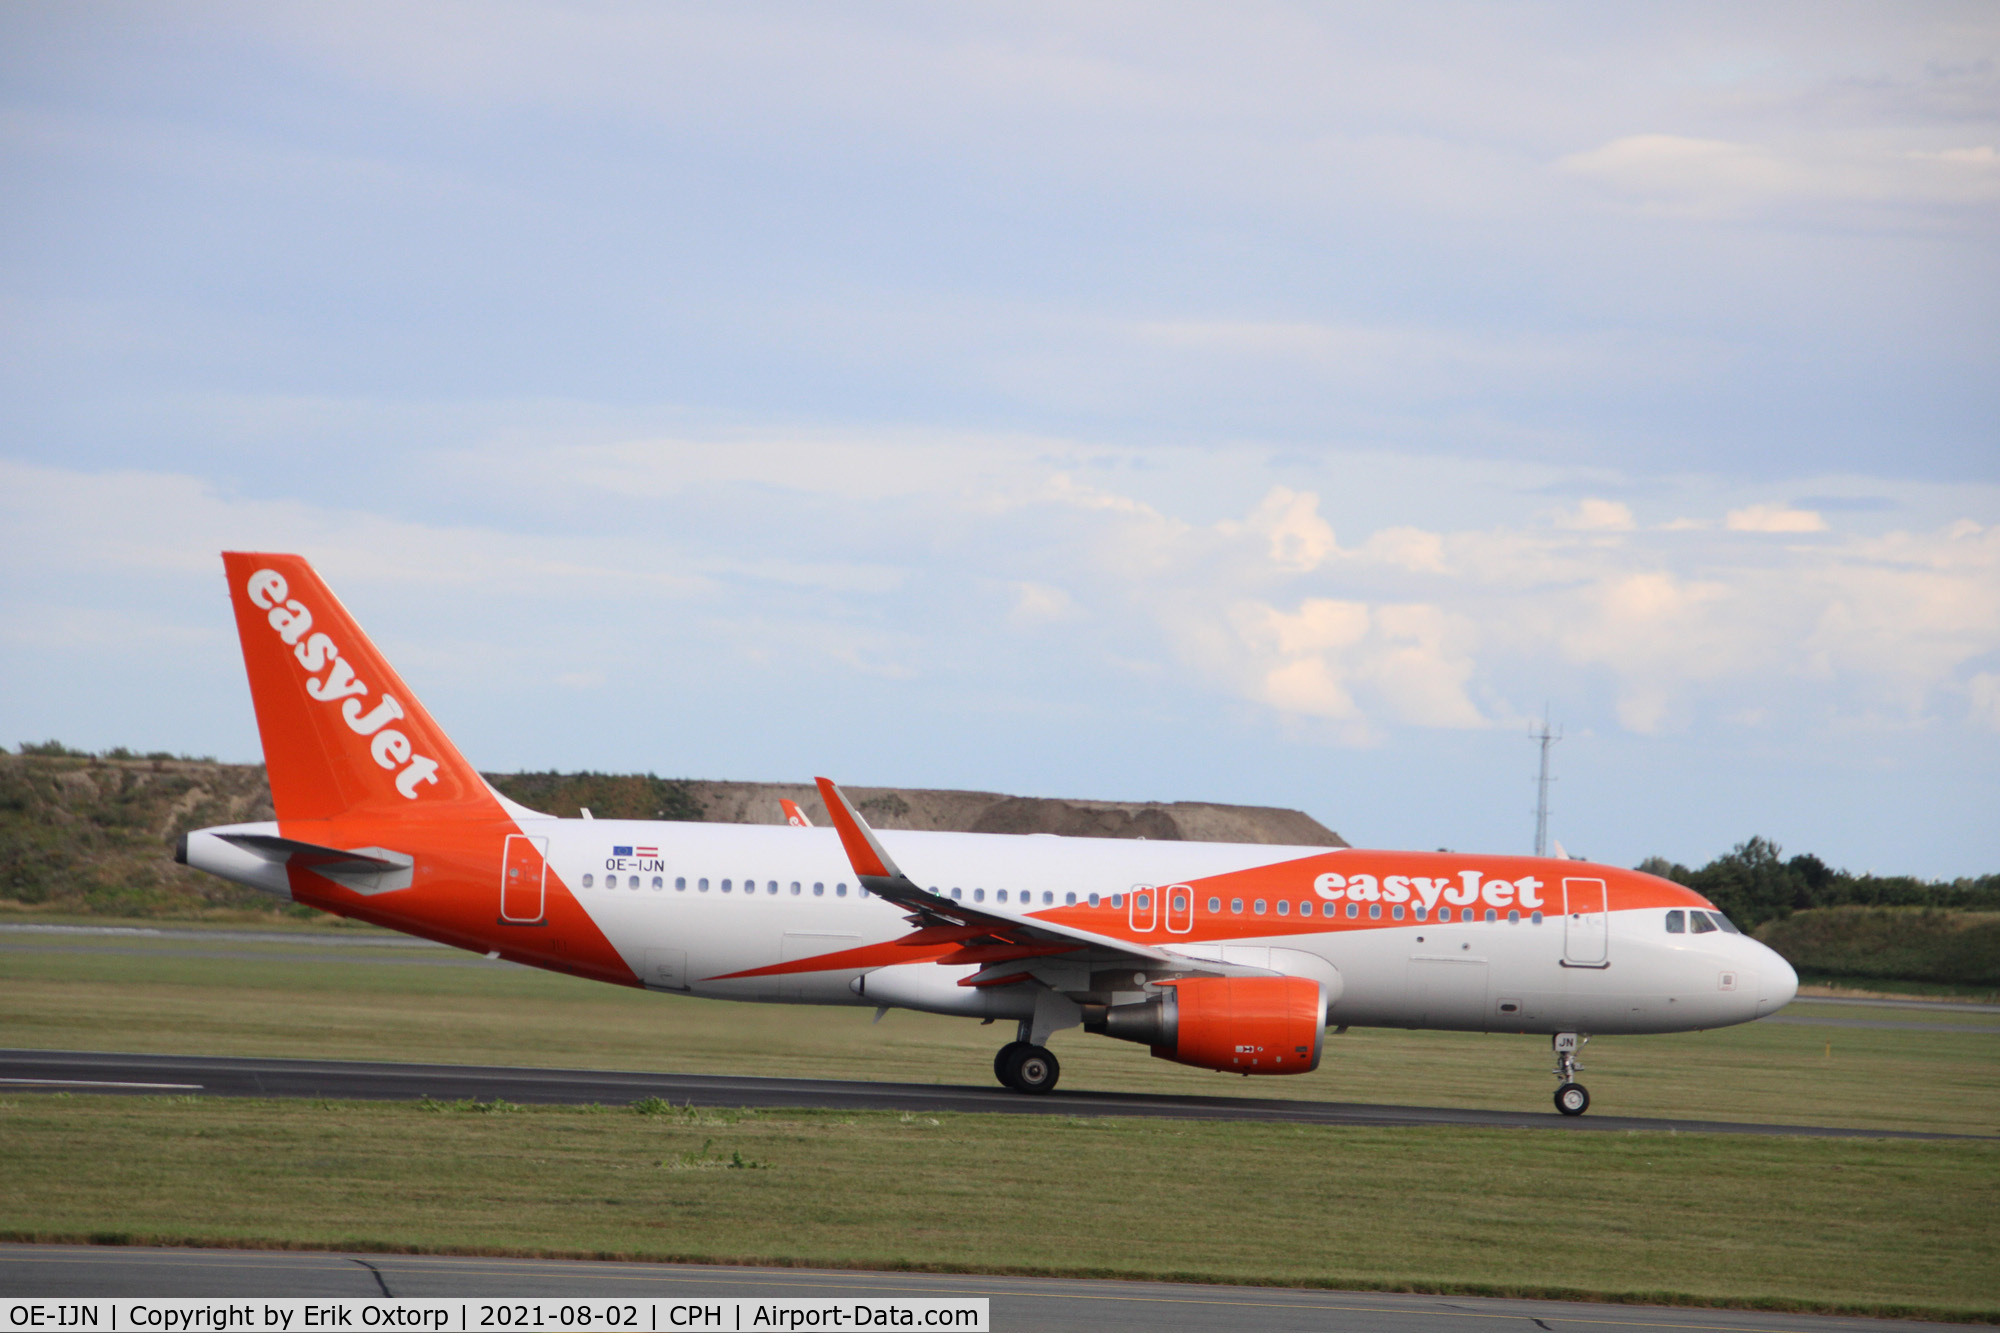 OE-IJN, 2015 Airbus A320-214 C/N 6834, OE-IJN taking off rw 22R